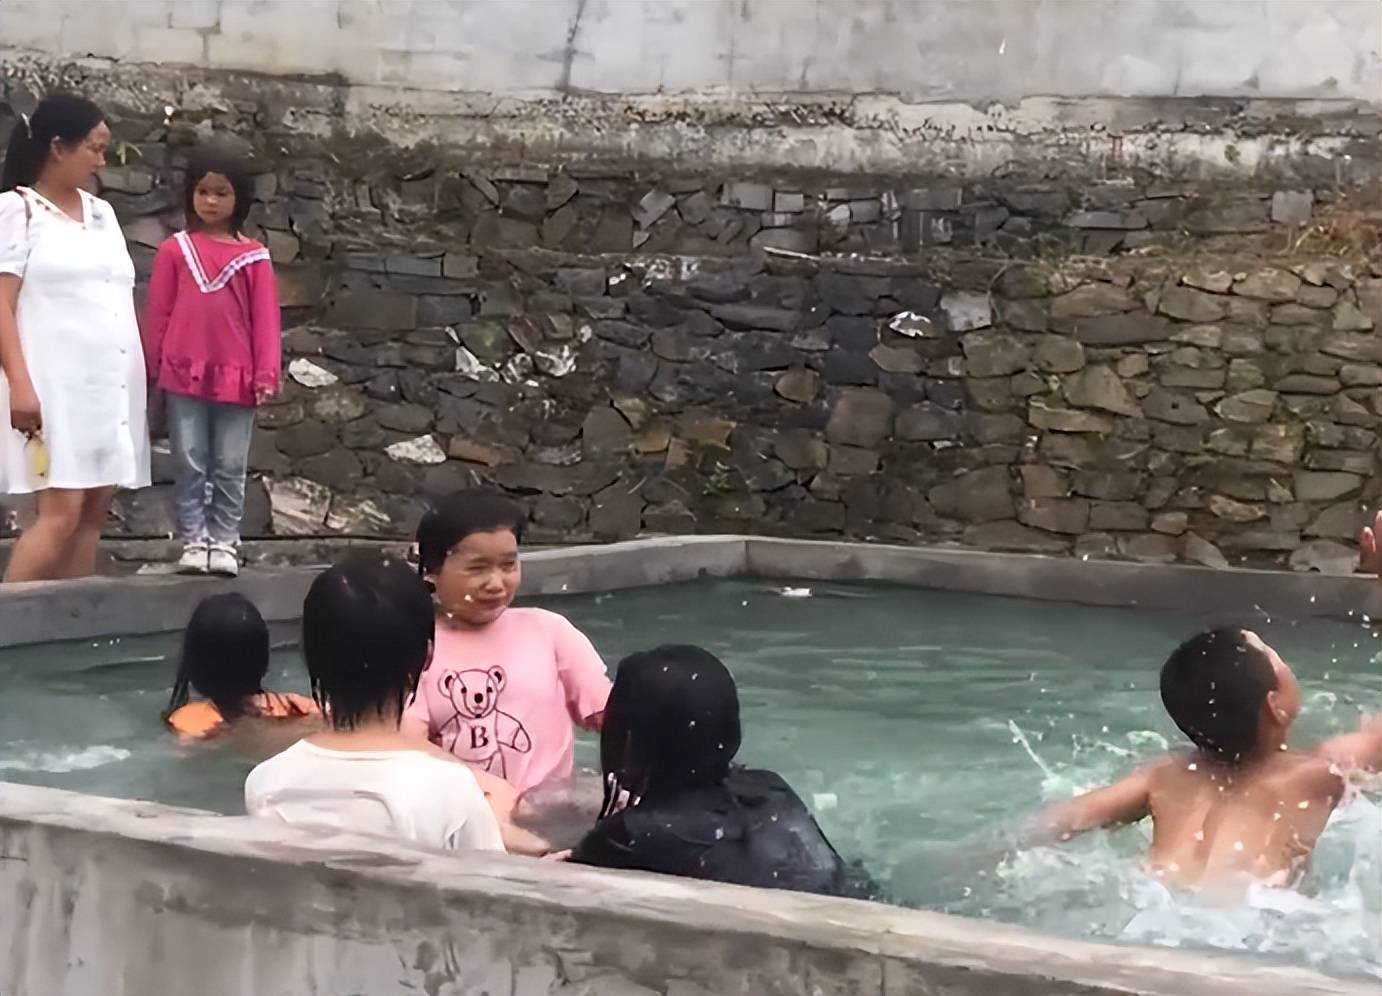 二胎宝妈自建泳池,免费供全村孩子玩水,童年的快乐和安全都有了